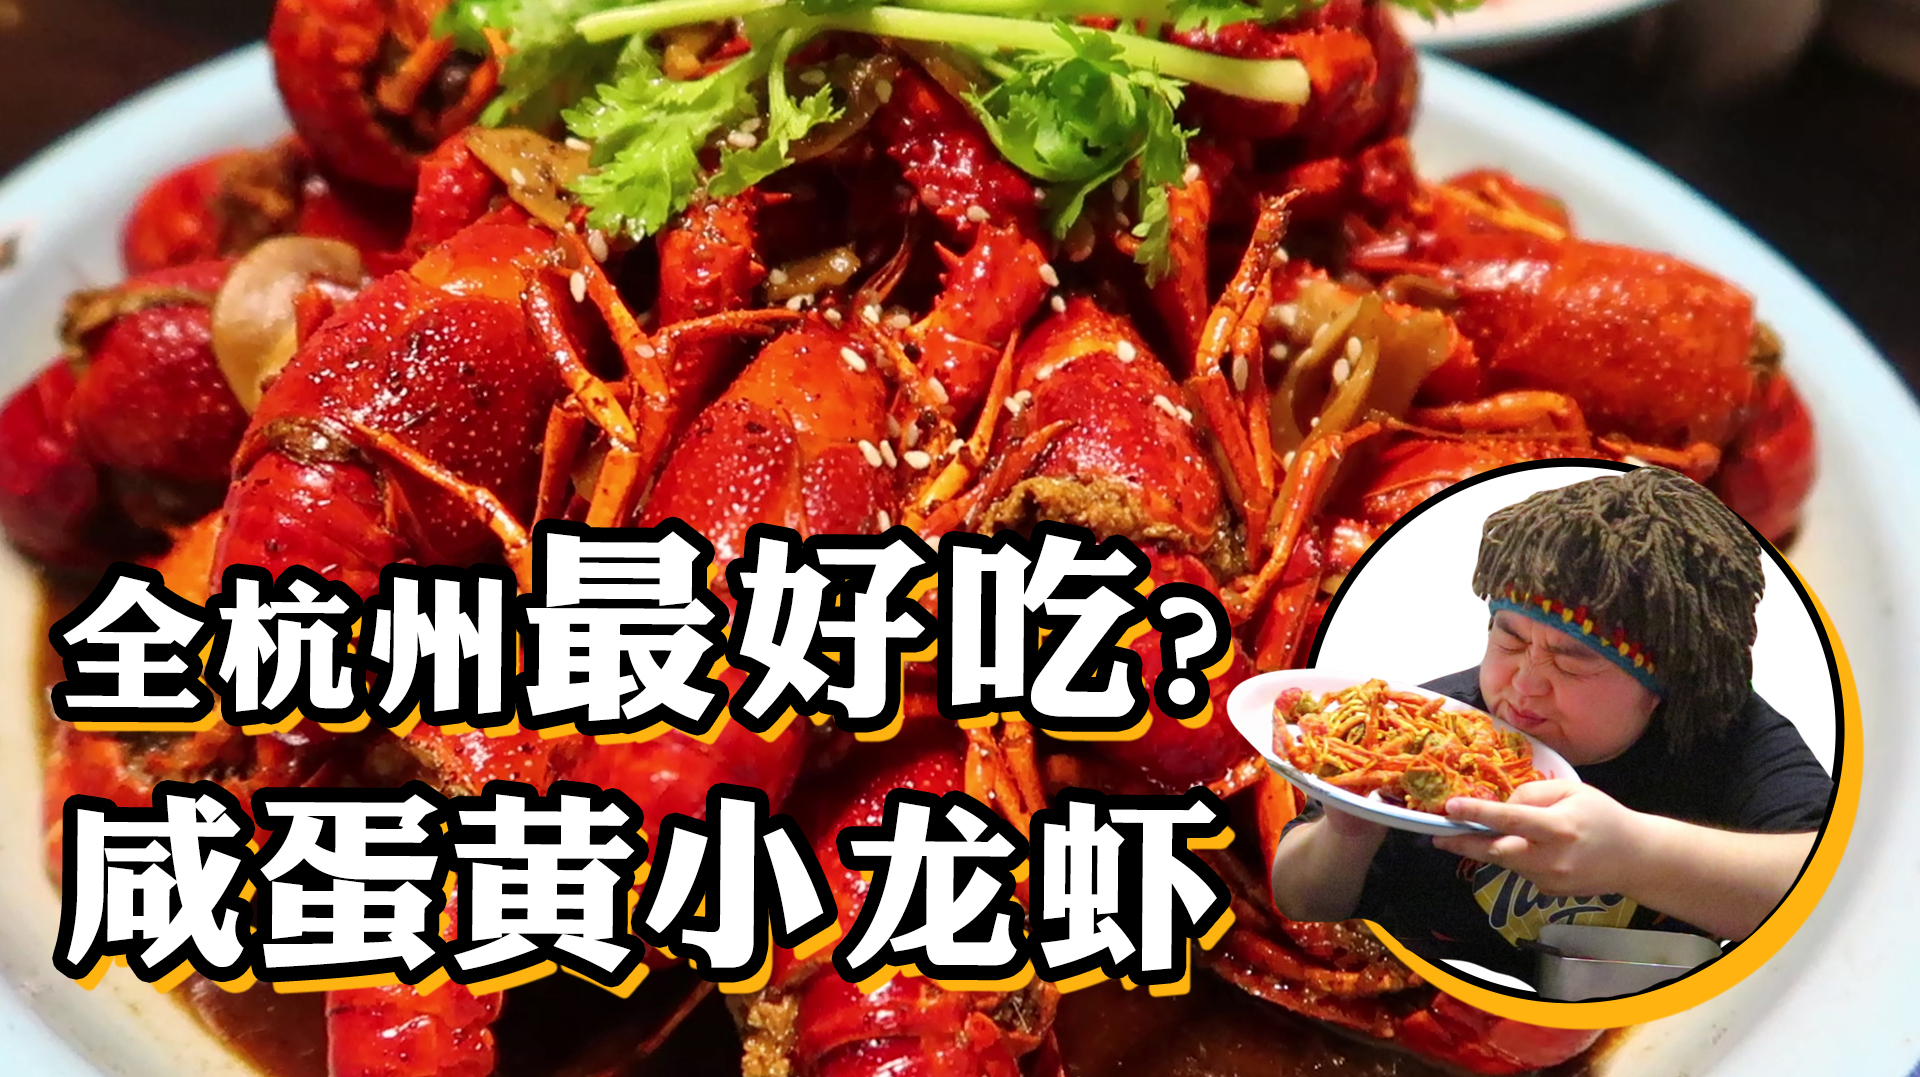 据说杭州最好吃的小龙虾在这里?杭州旅行美食攻略,咸蛋黄小龙虾